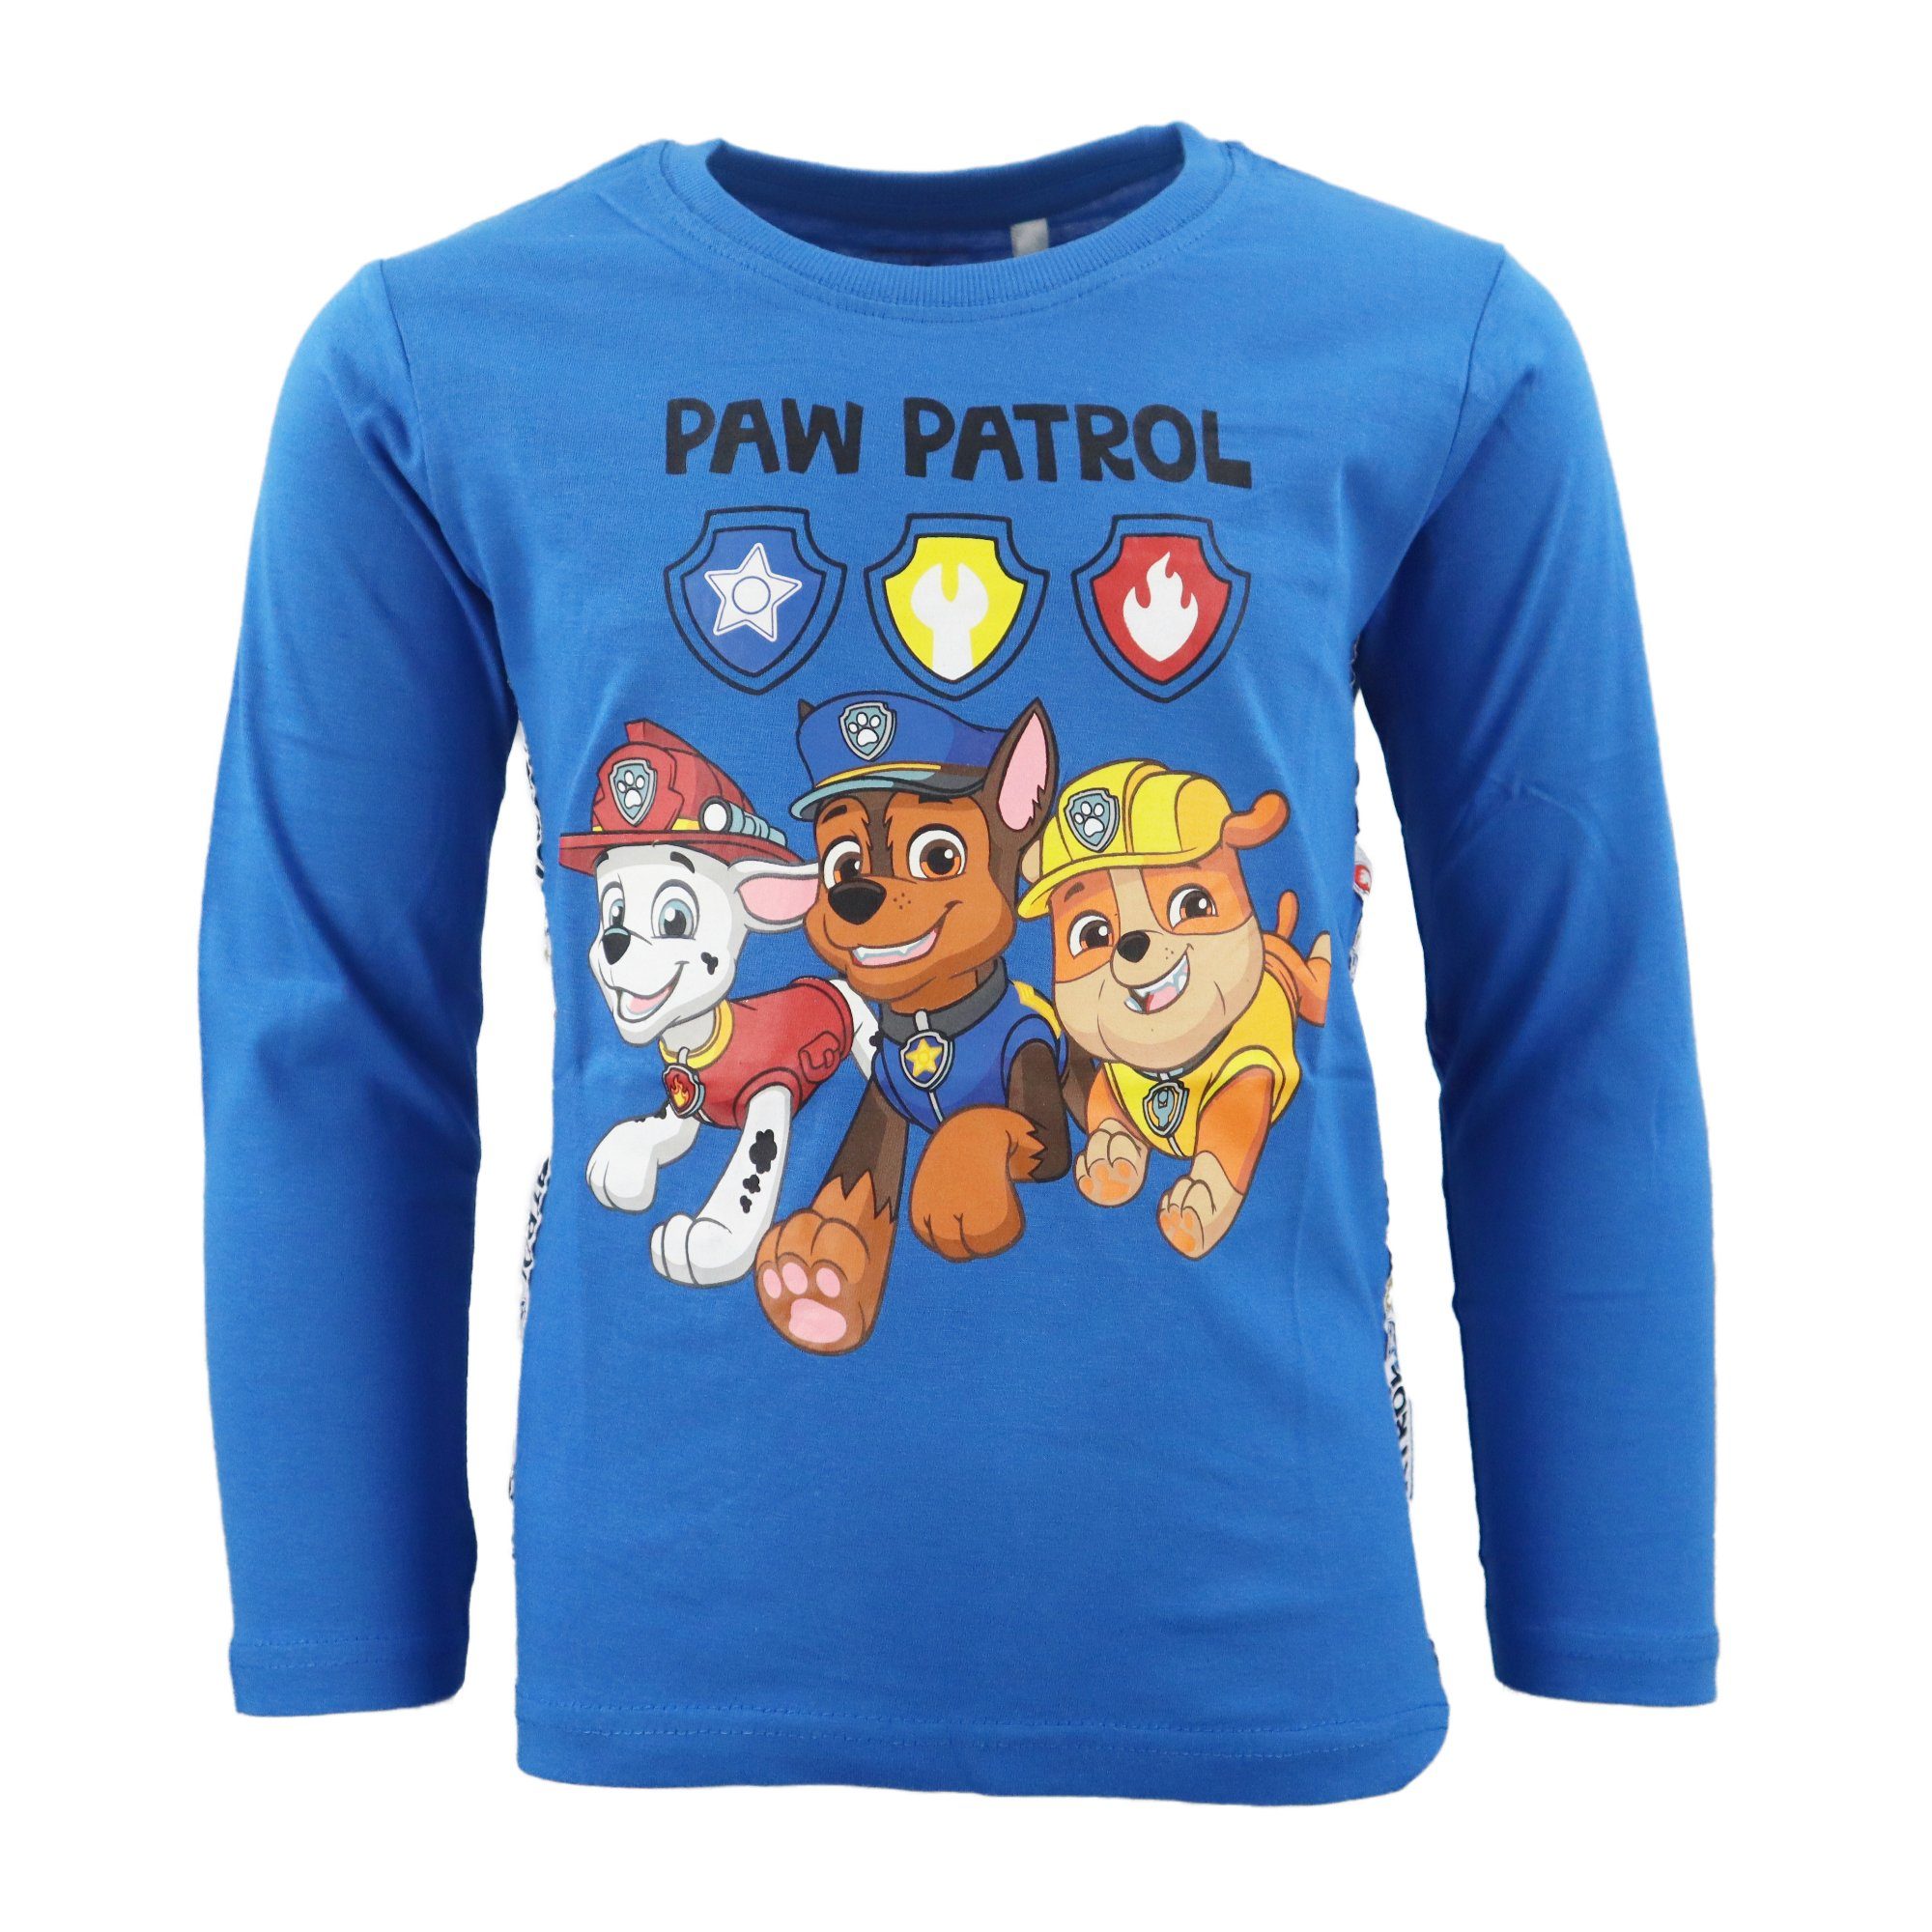 PAW PATROL Langarmshirt Paw Patrol Chase Marshall Kinder Shirt Gr. 98 bis 128, 100% Baumwolle Blau